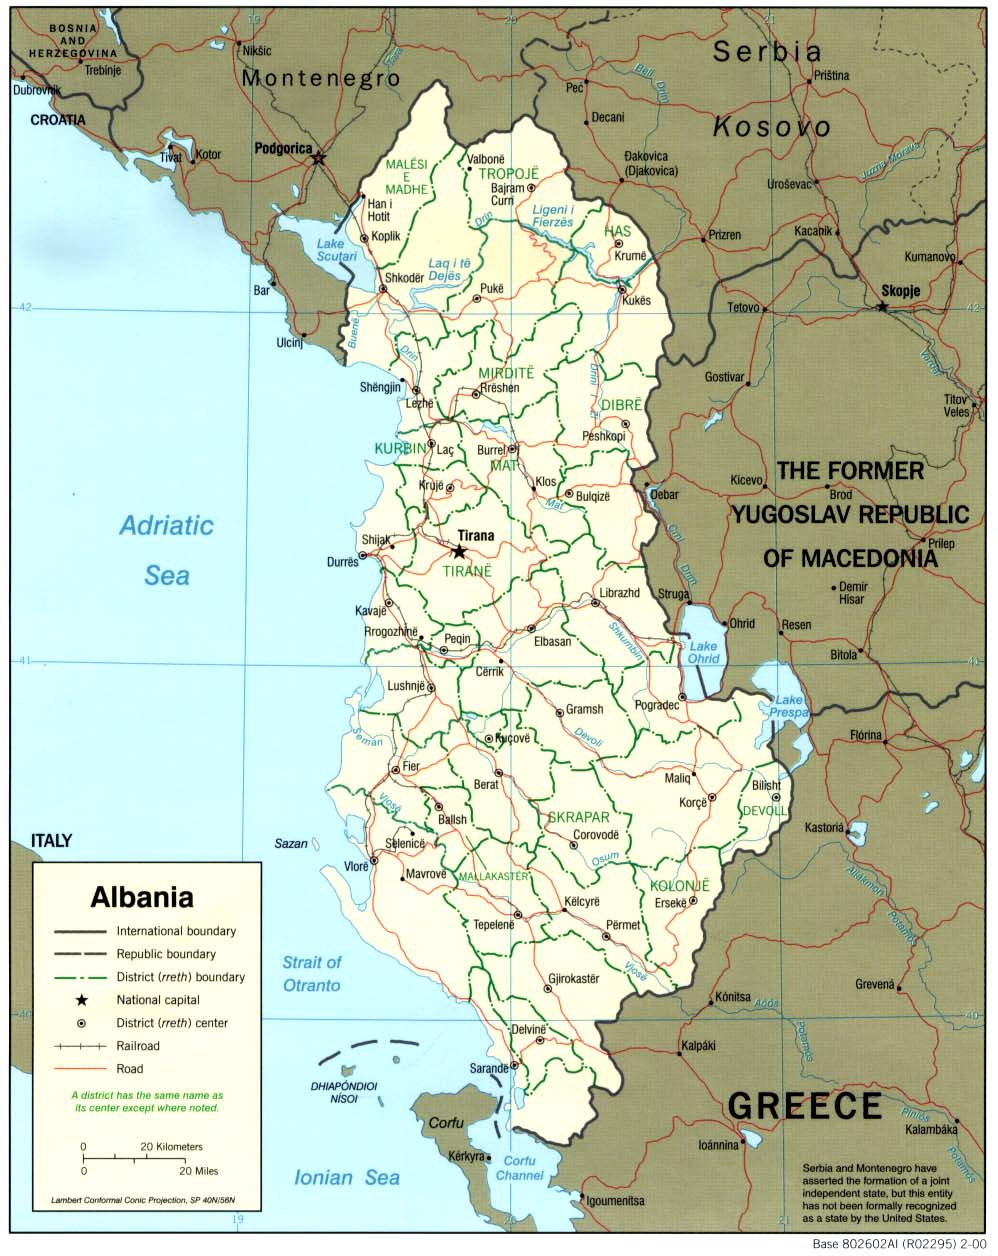 ALBANIA - CLIMI E PAESAGGI CLIMATICI